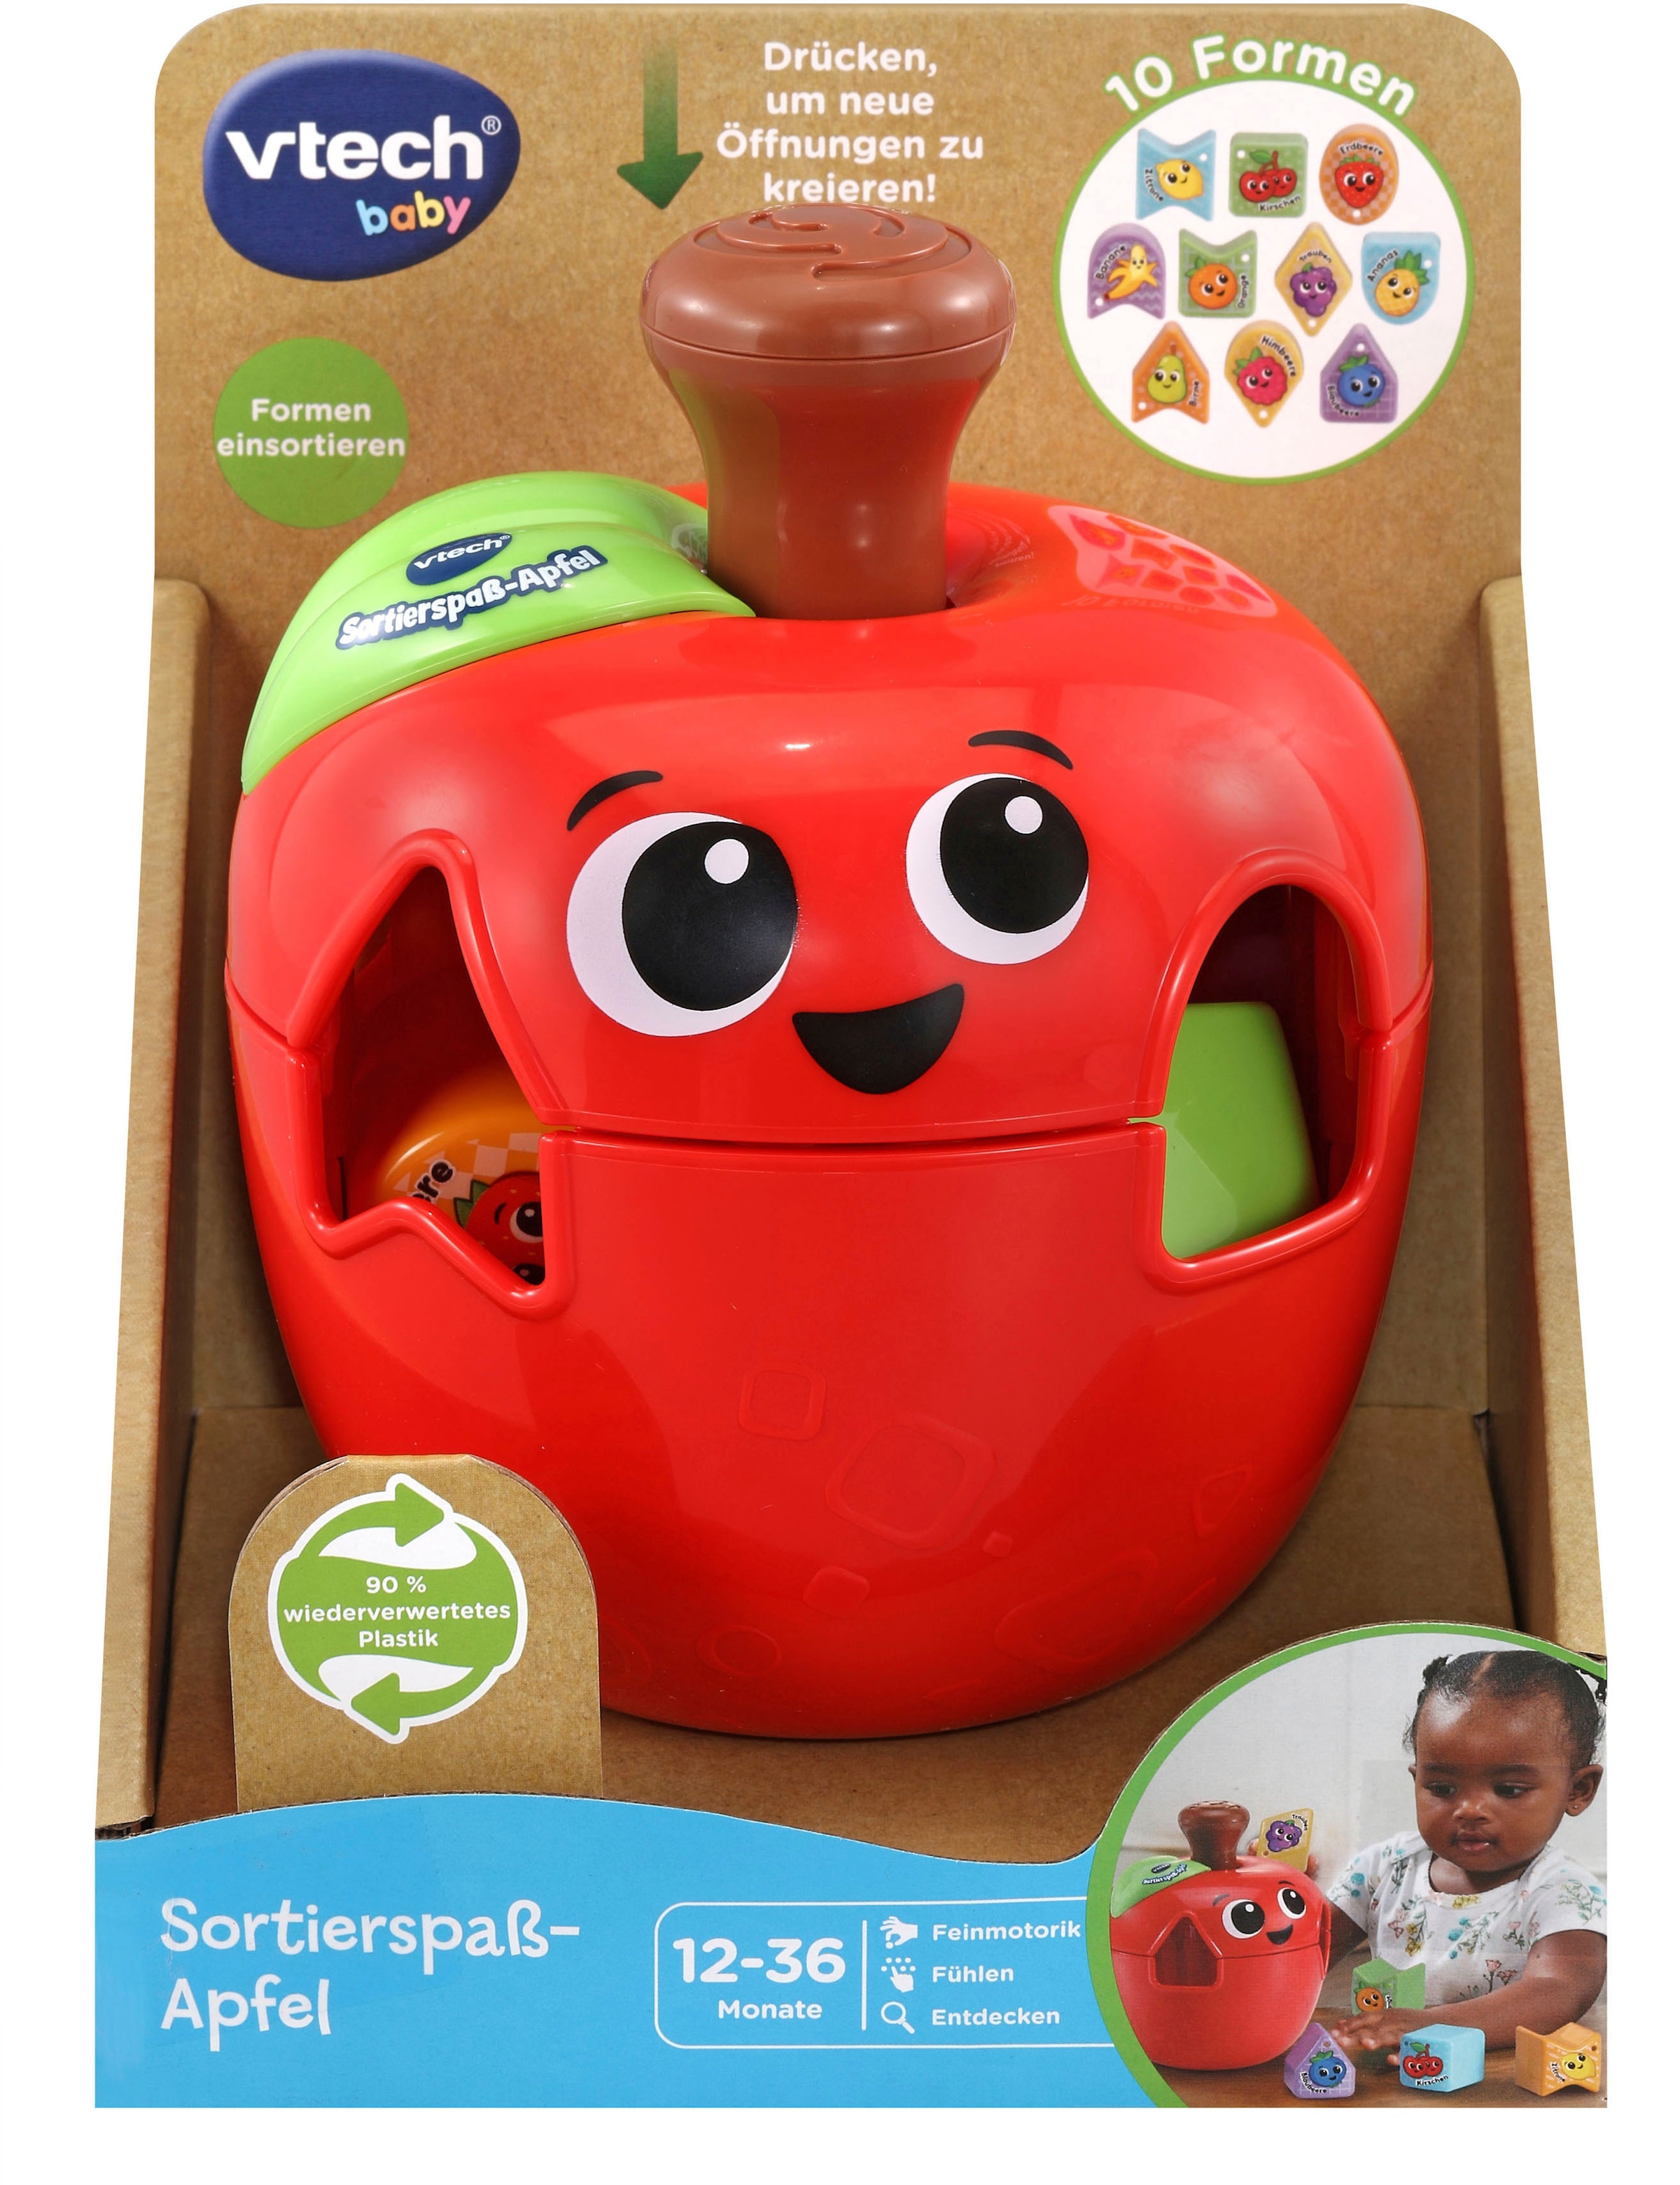 Vtech® Steckspielzeug »Vtech Baby, Sortierspaß-Apfel«, zum Teil aus recycelten Material